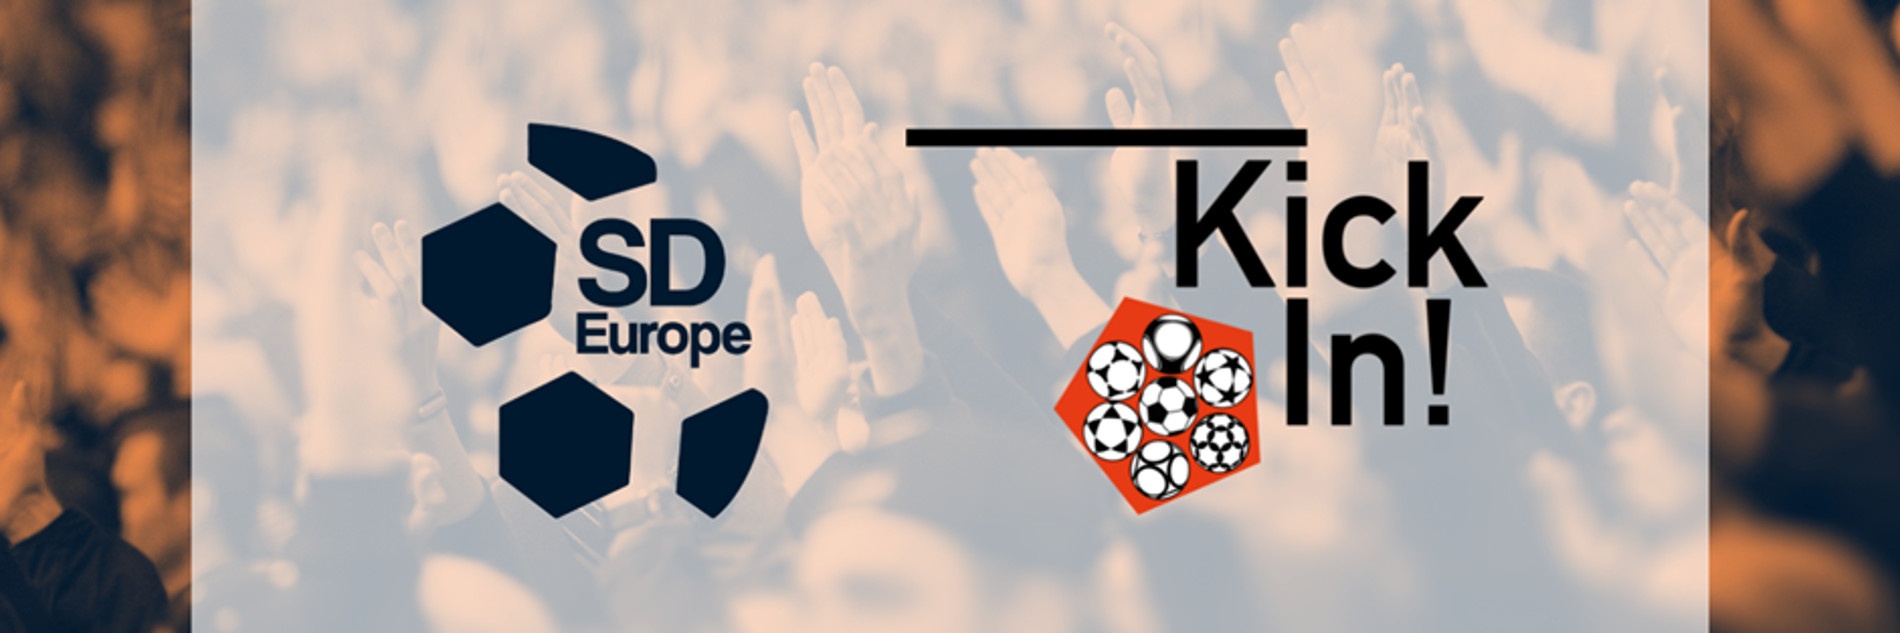 Links das SD Europe-Logo bestehend aus einem angedeuteten Fußball. Rechts das KickIn!-Logo mit einem Fünfeck, in dem sieben verschiedene Fußbälle zu sehen sind.